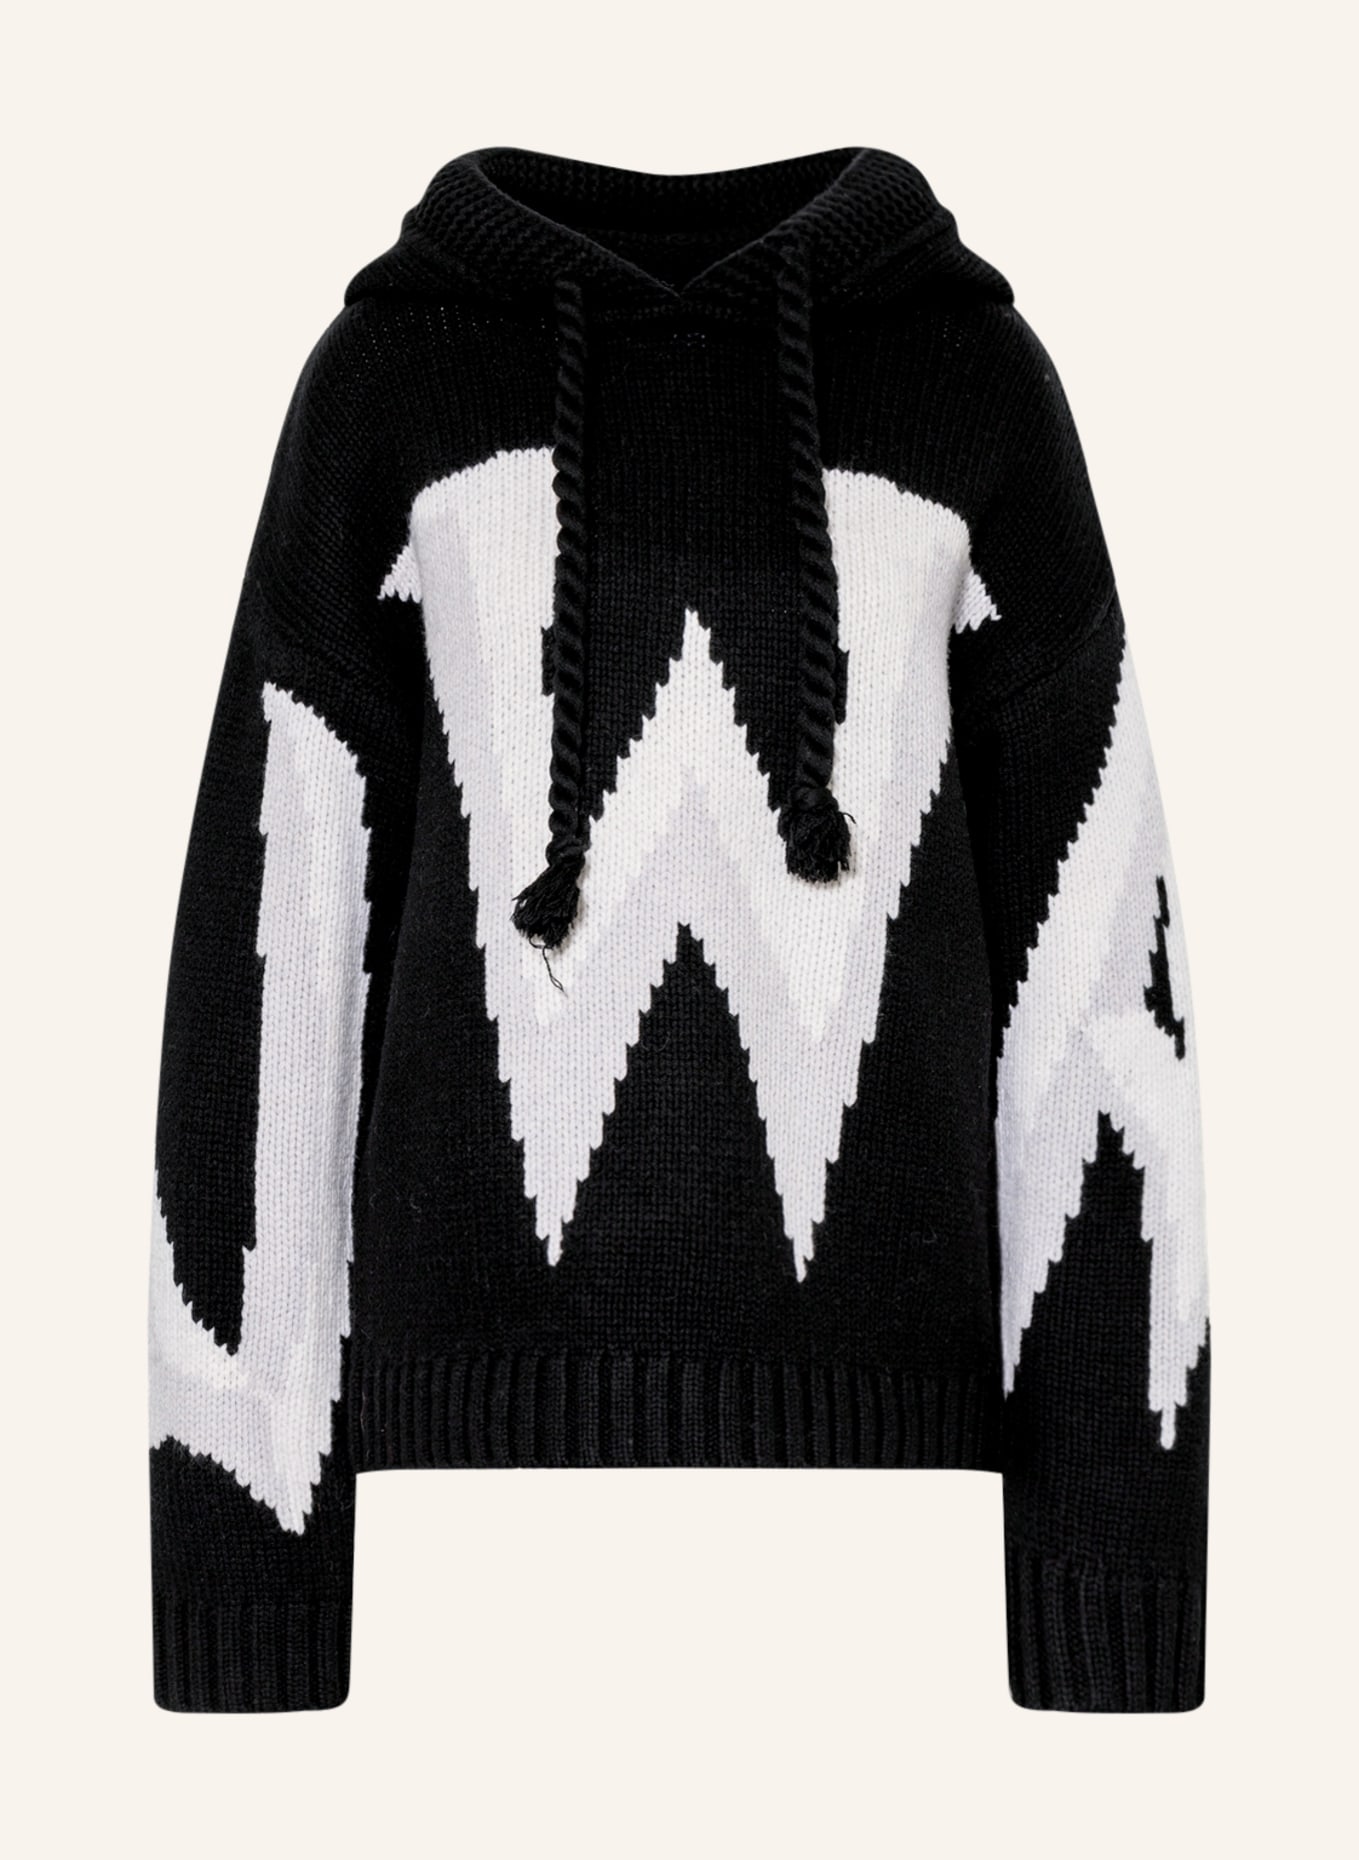 JW ANDERSON Oversized-Pullover, Farbe: SCHWARZ/ WEISS (Bild 1)